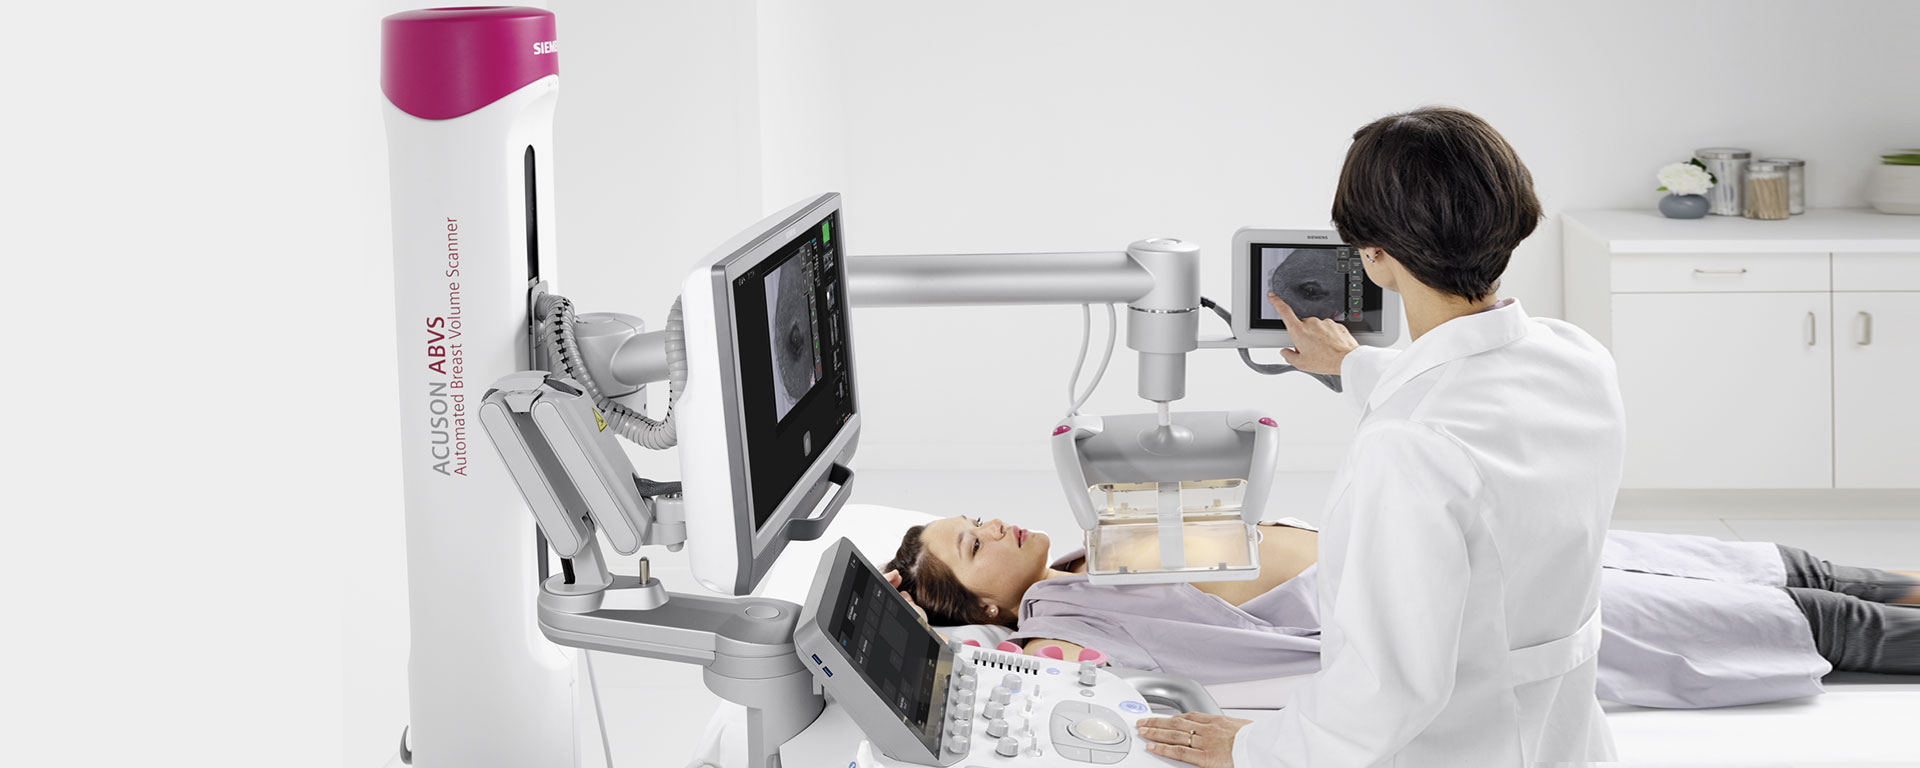 Lễ ra mắt thiết bị Siêu âm tuyến vú 3D tự động thế hệ mới ACUSON S2000 ABVS tại Trung tâm Y khoa Medic Hòa Hảo